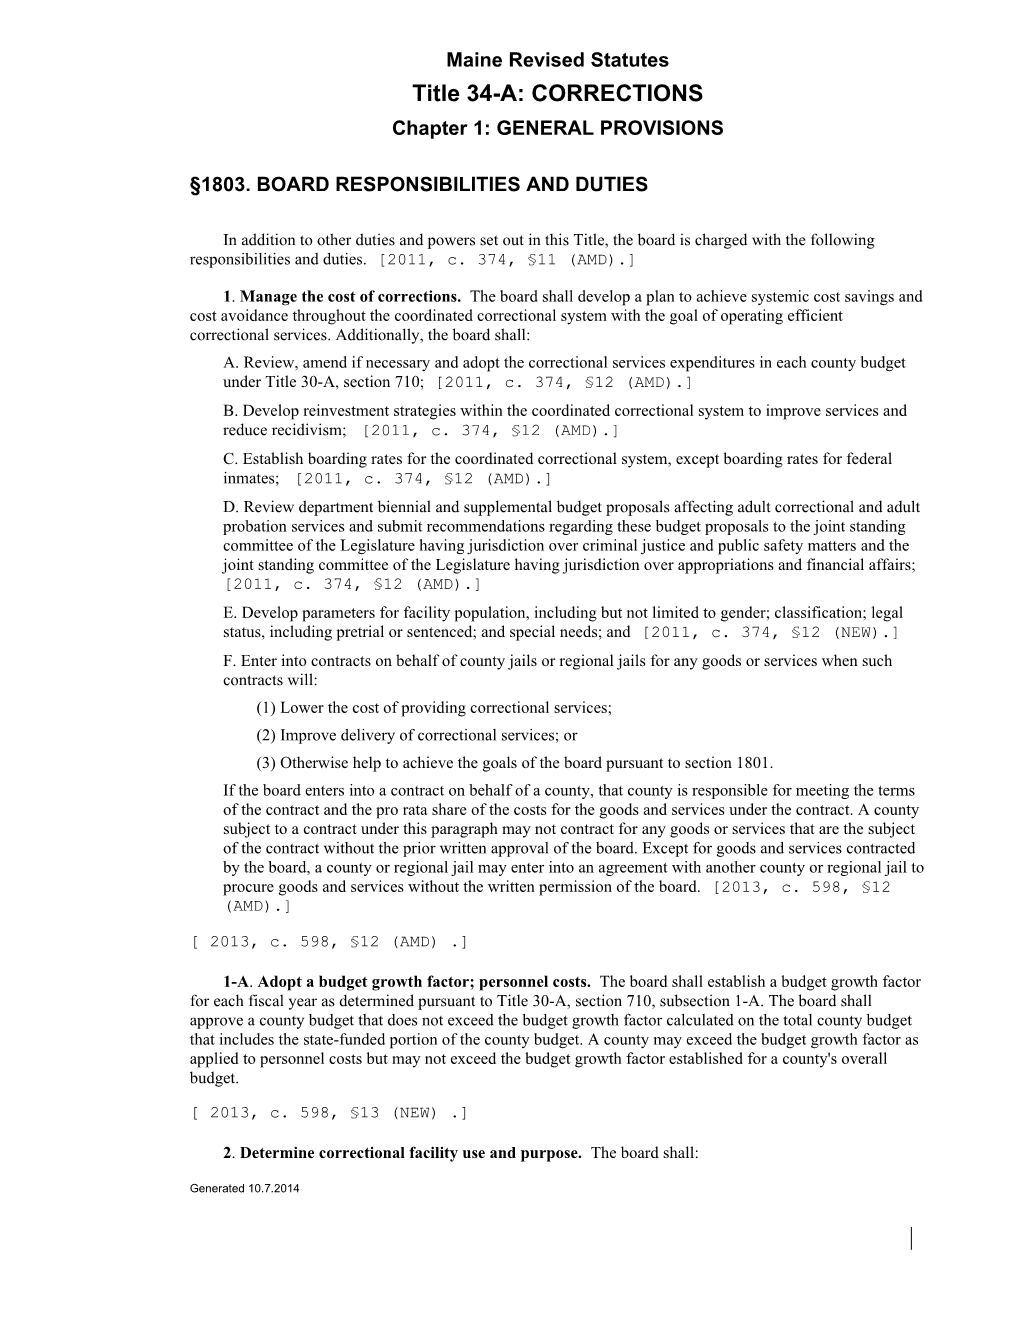 Maine Revised Statutes s2